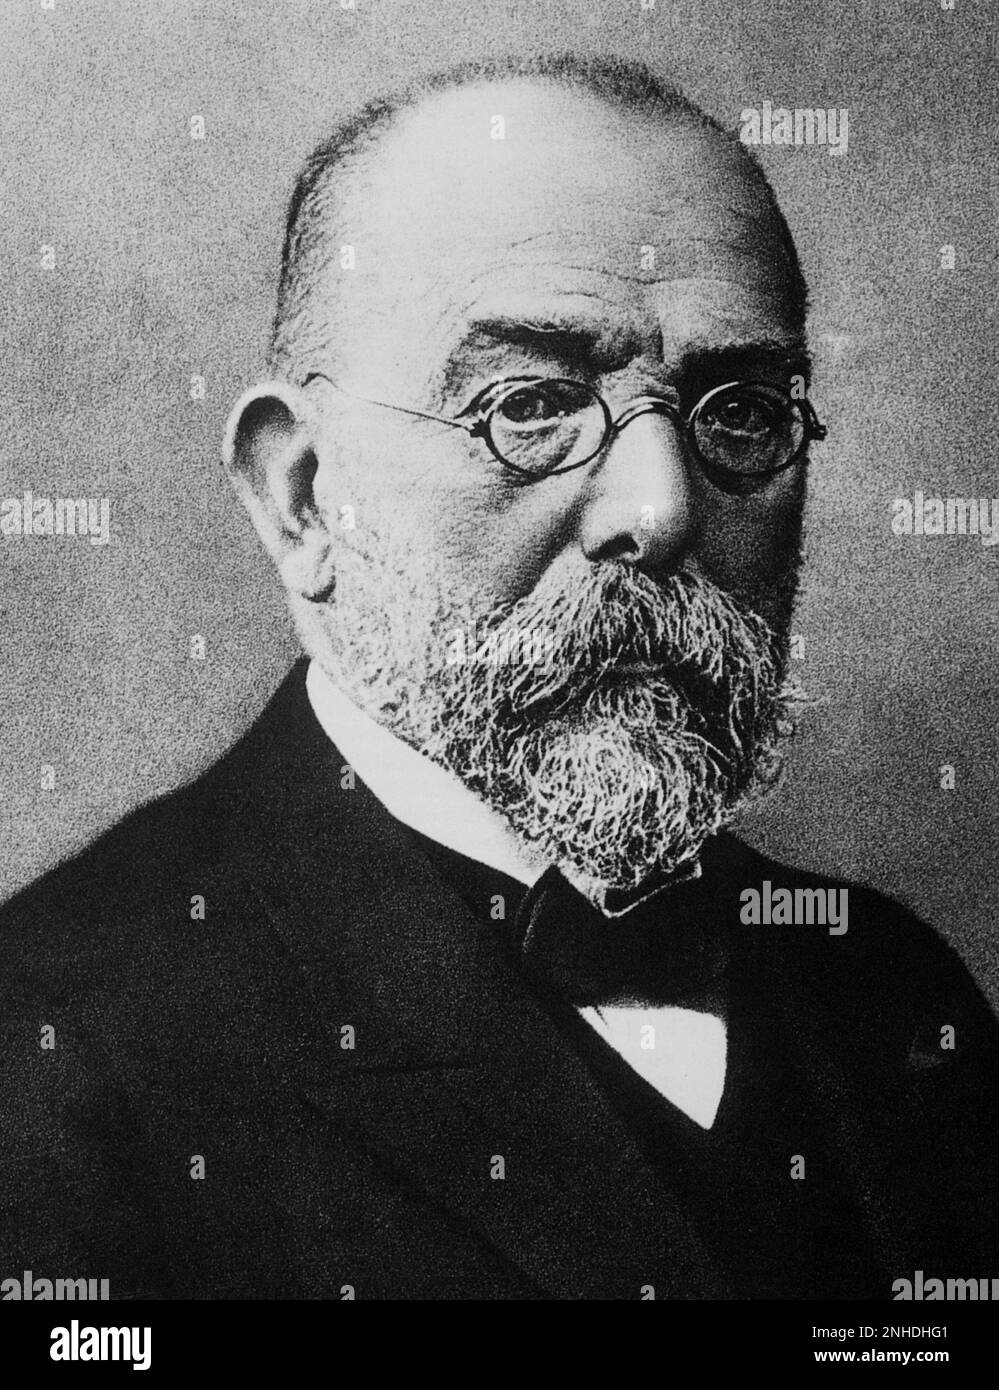 Il celebre scienziato, chimicista e microbiologo tedesco ROBERT KOCH ( Clausthal 1843 - Baden -Baden 1910 ), premio NOBEL 1905 per la scoperta della tubercolosi bacillus ( 1882 ) e del virus del colera ( 1884 ) - SCIENZIATO - ritratto - ratto - barba - barba - barba - cravatta - papillon - cravatta - VACCINAZIONE - Vaccinazione - MICROBIOLOGIA - IMMONOLOGIA - occhiale - MEDICINA - MEDICO - MEDICO - COLERA - TUBERCOLOSI ---- Archivio GBB Foto Stock